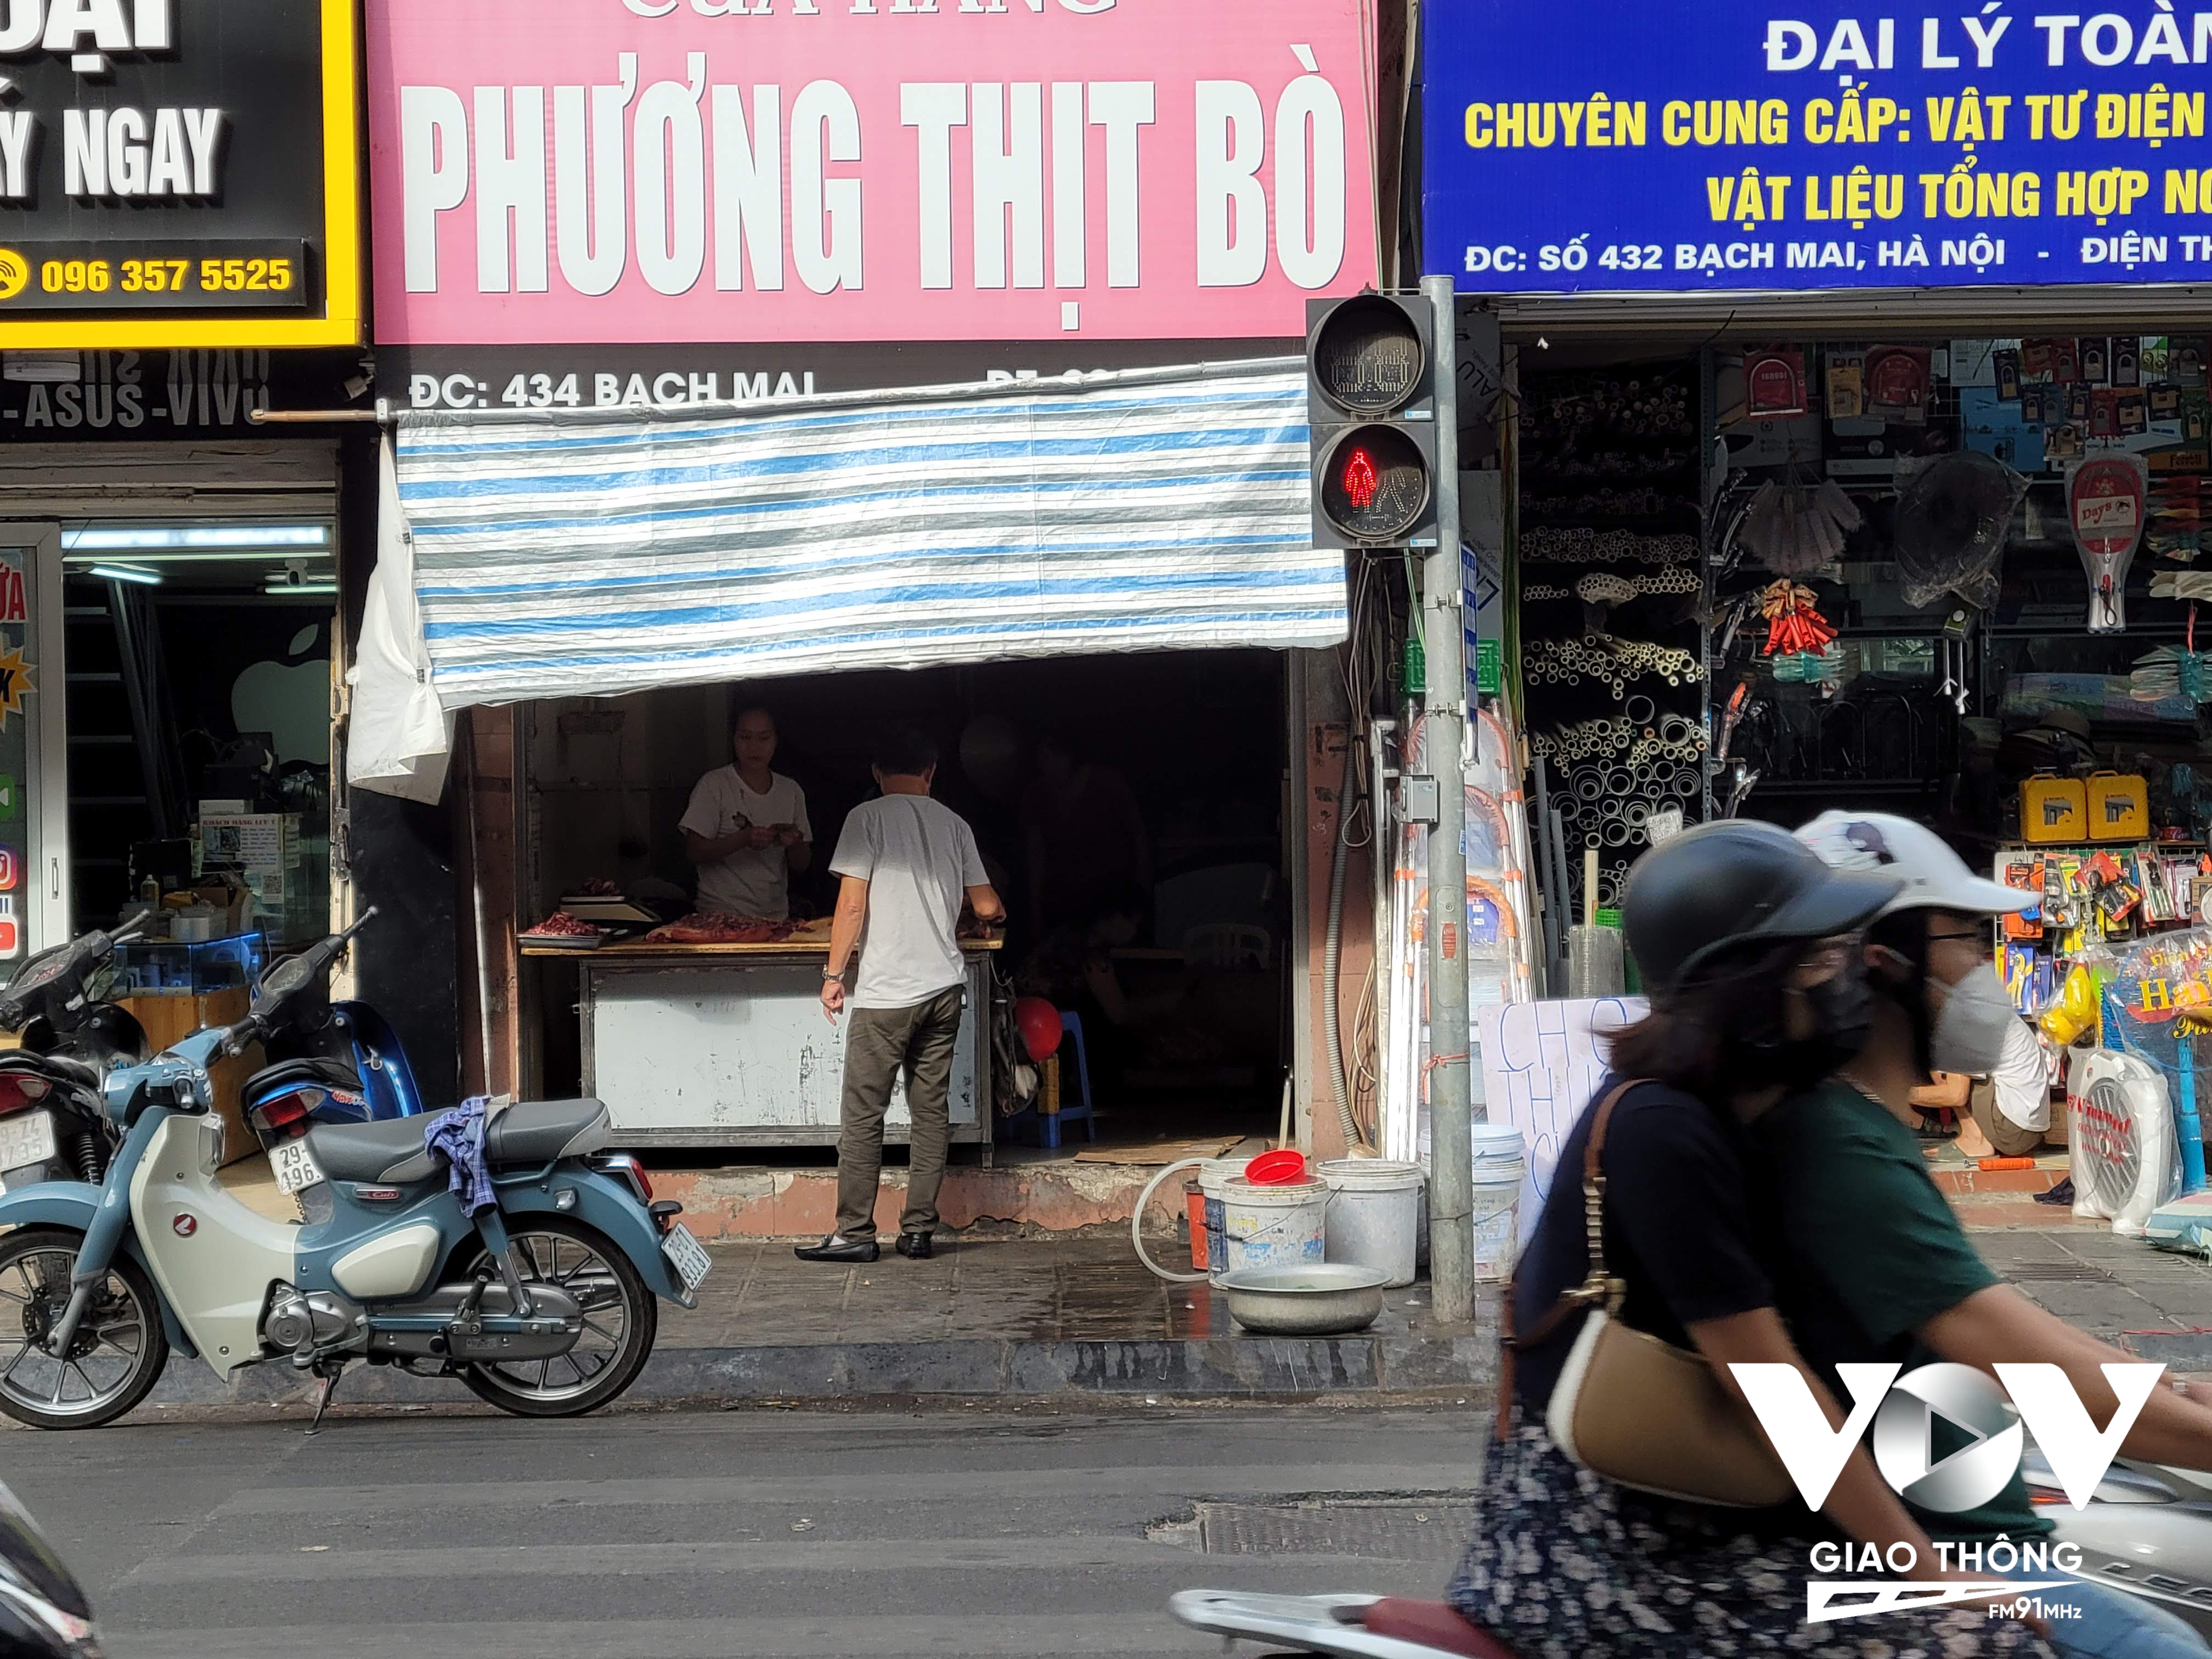 Vỉa hè bên dãy số nhà chẵn phố Bạch Mai vốn đã chật hẹp, lại bị lấn chiếm từ hàng quán kinh doanh, nên không khuyến khích được người đi bộ tiếp cận với hệ thống nút bấm sang đường.